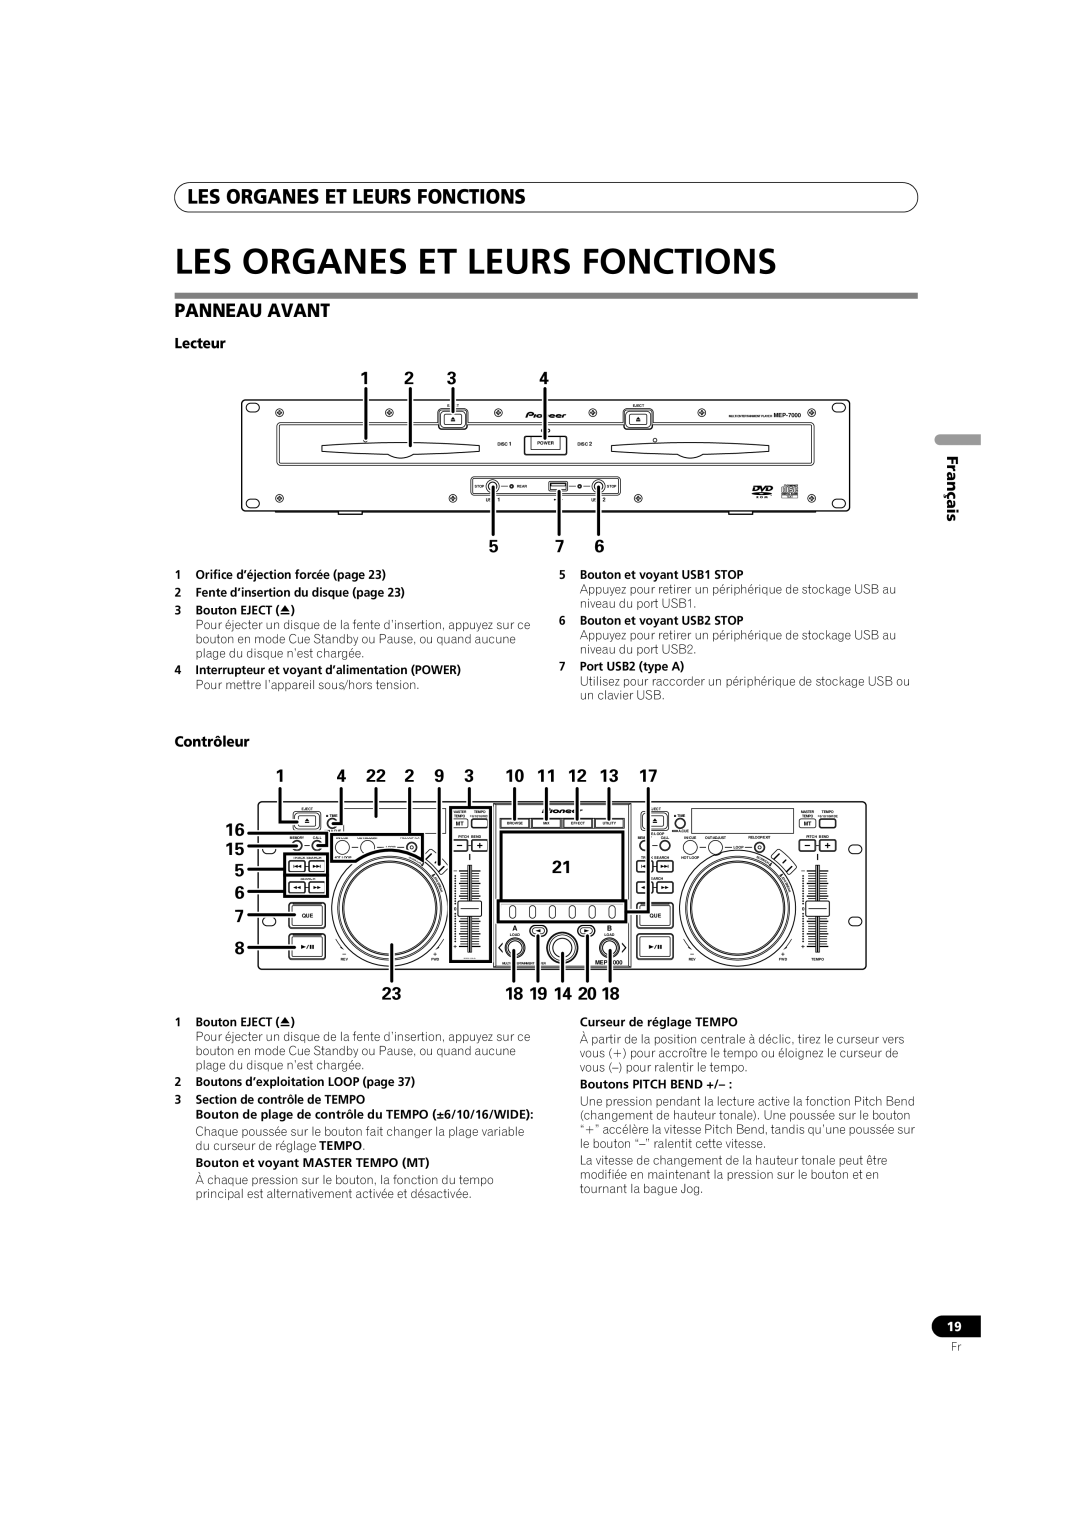 Pioneer MEP-7000 operating instructions Les Organes Et Leurs Fonctions, Panneau Avant, 16 15 5 6 8, 1 4 22 2, 18 19 14 20 